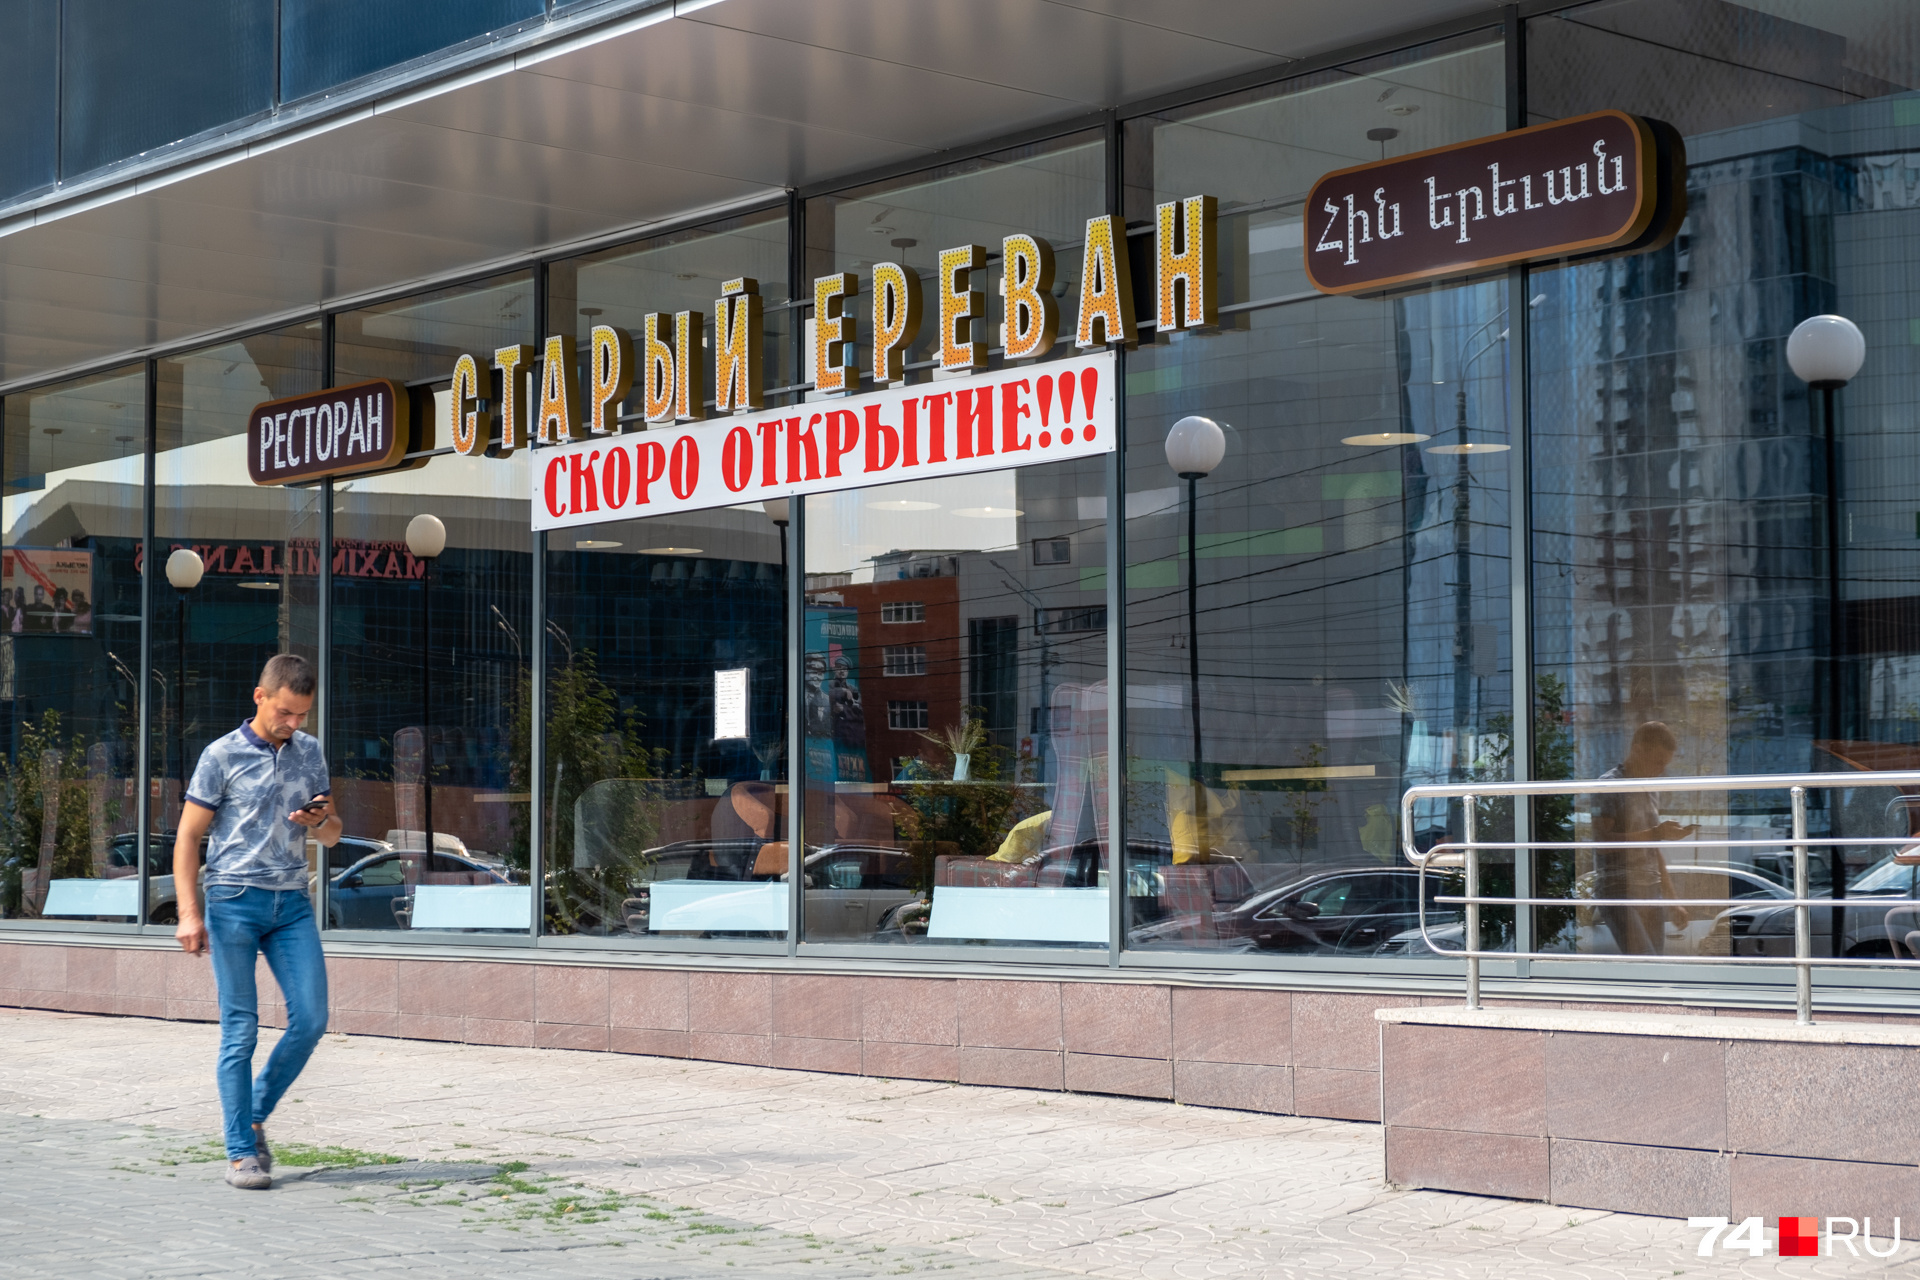 Новый ресторан станет четвертым заведением сети в Челябинске